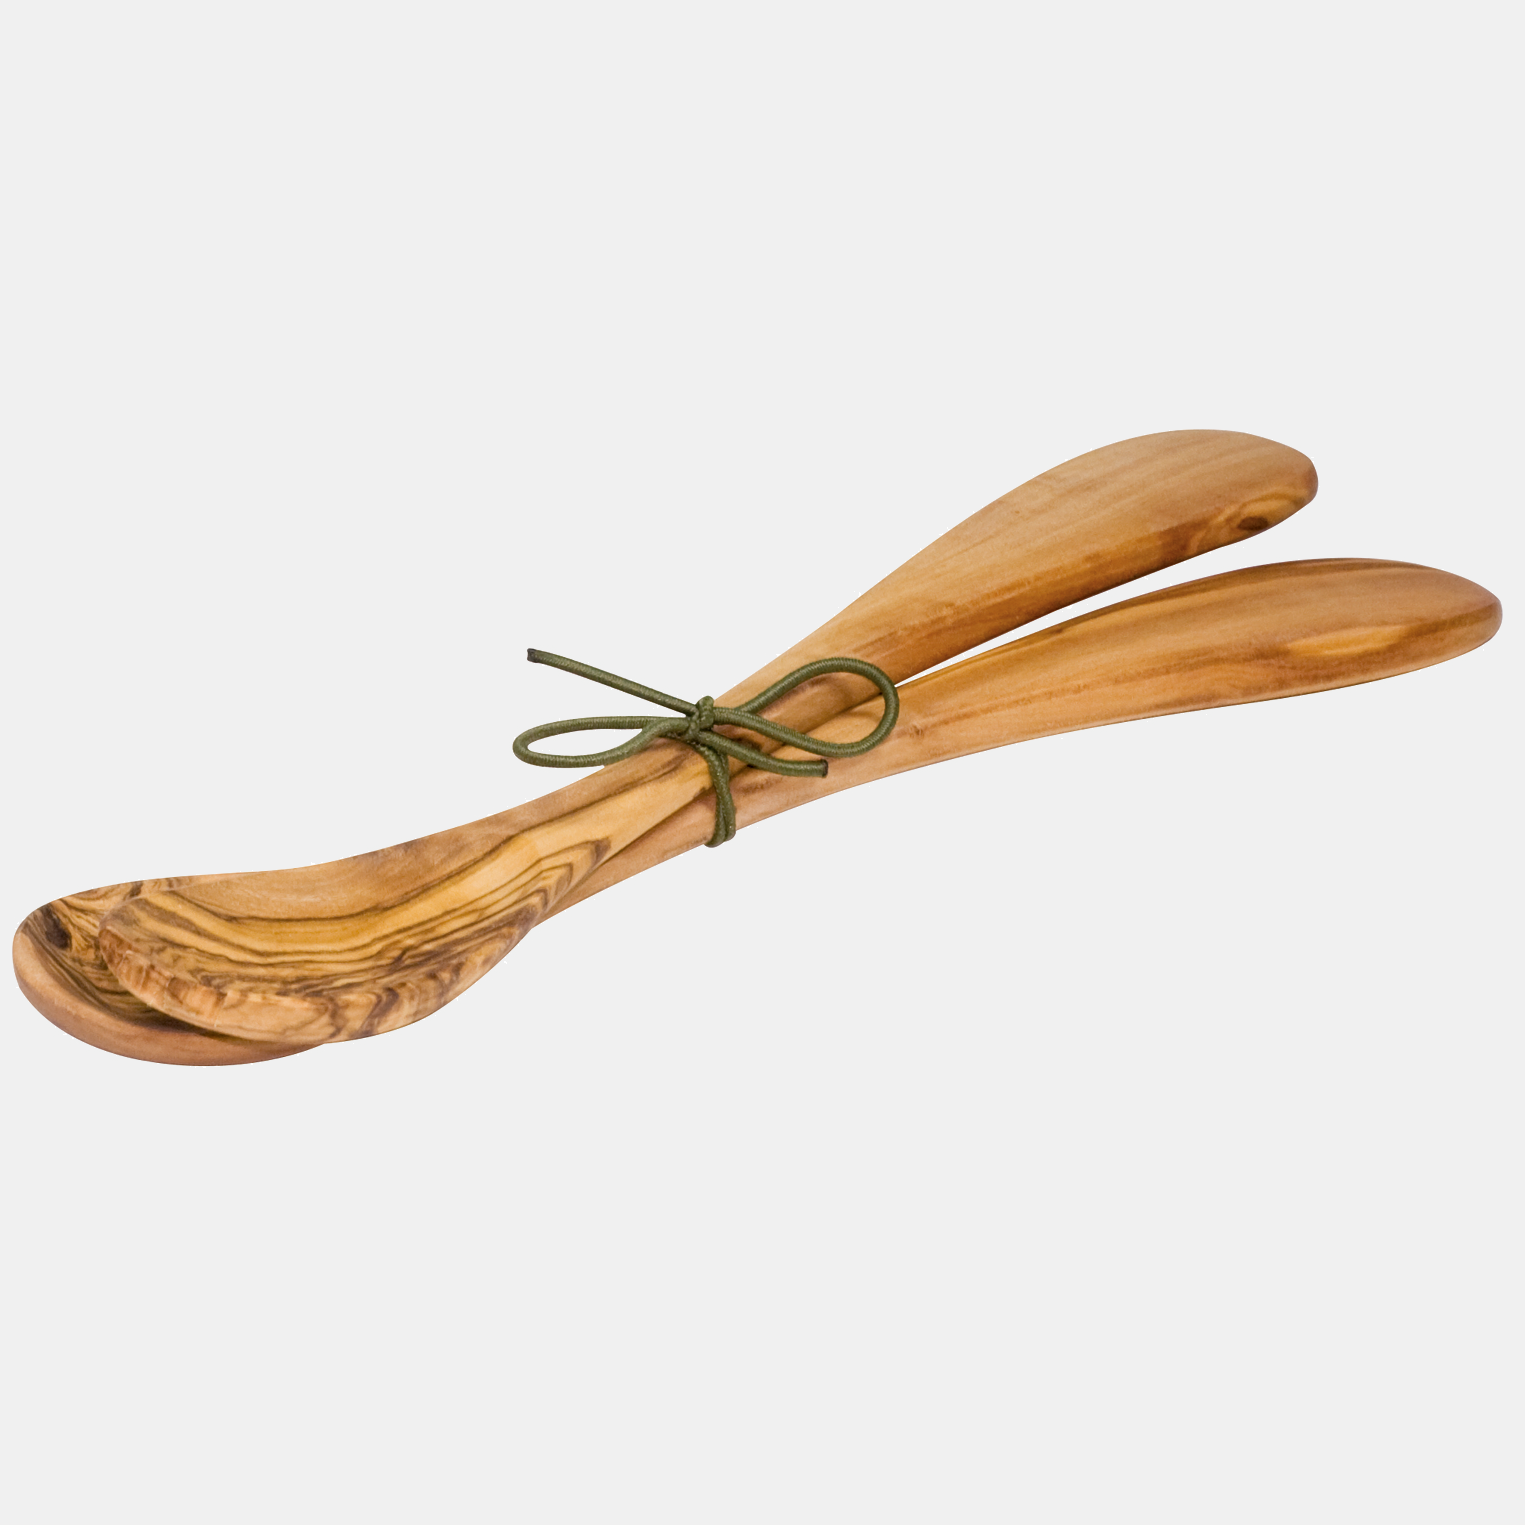 Set 2 spatule pentru salata, alimente, legume. Din lemn natural de maslin, unic. Facut de mana in Germania. 100% lemn obtinut sustenabil.